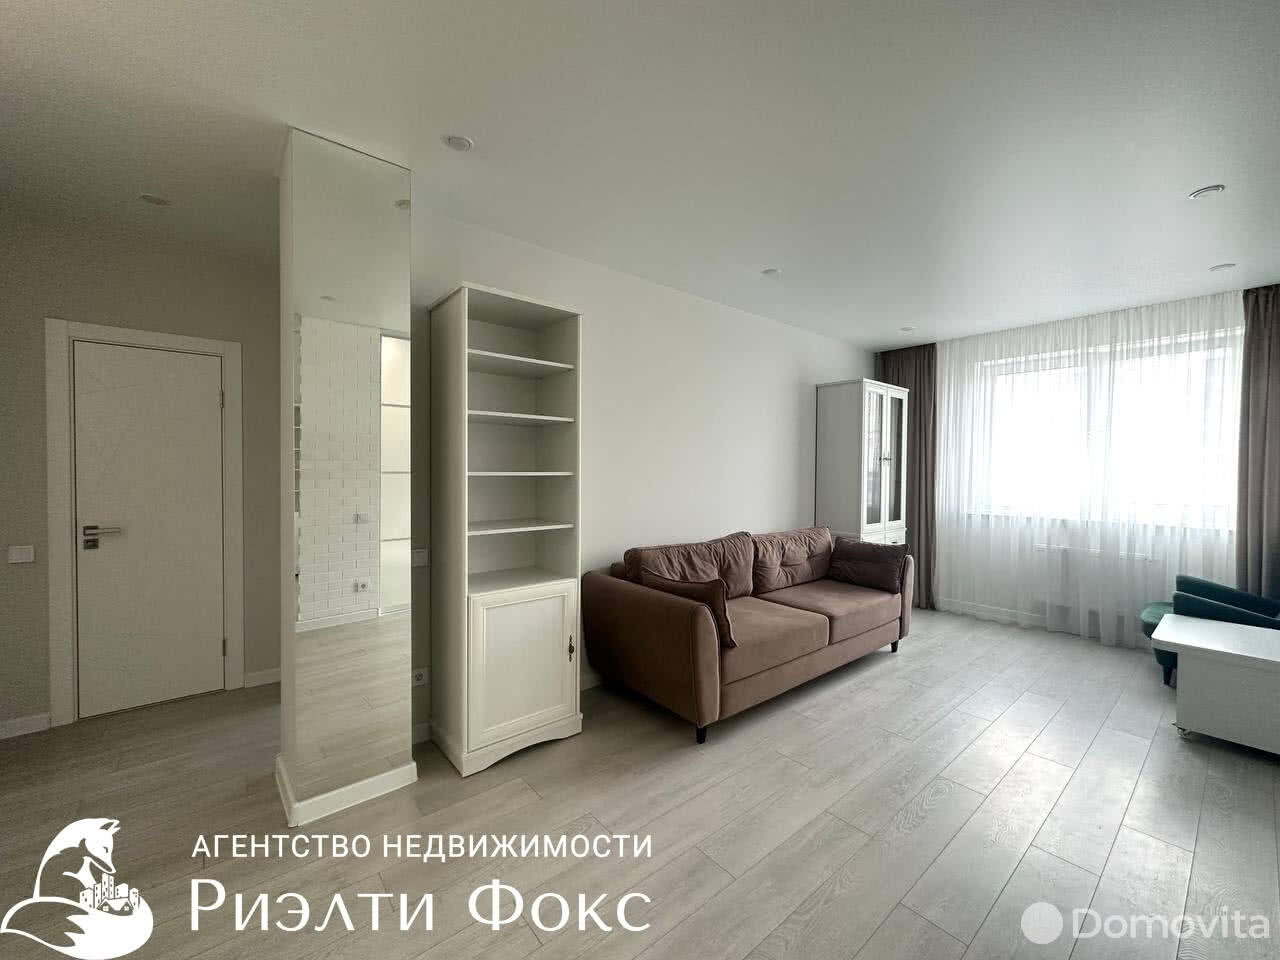 квартира, Минск, пр-т Дзержинского, д. 11, стоимость аренды 2 573 р./мес.